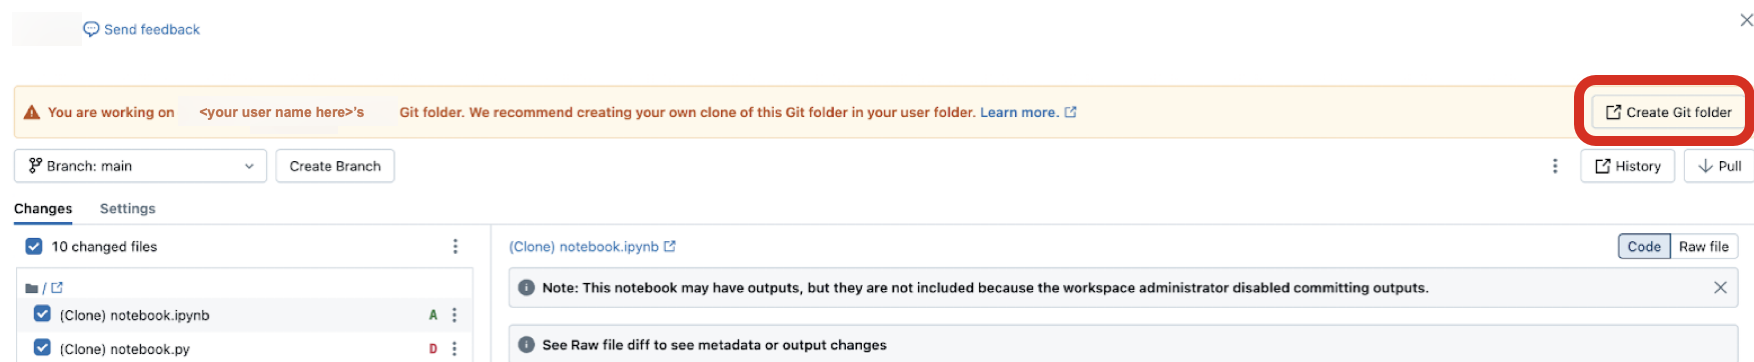 Clique no botão **Copy link to Git folder** no banner para compartilhar a configuração Git repo da pasta com outro usuário em sua organização Databricks